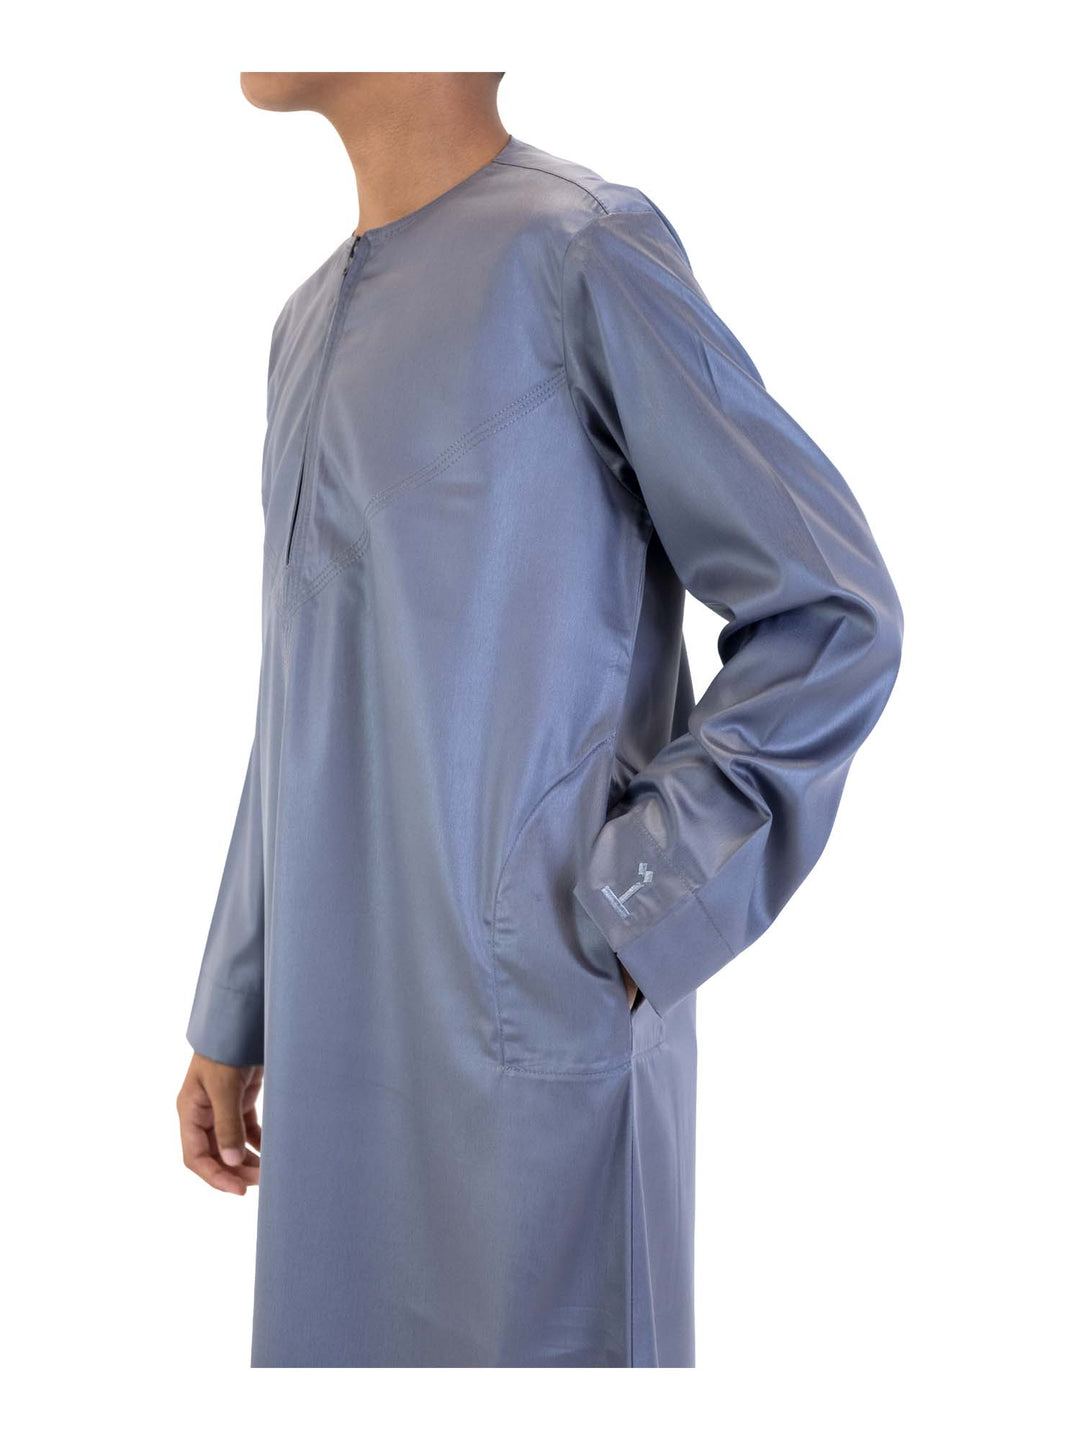 ثوب حريري للأولاد من الانطباعات الإسلامية مع سحاب - كم كامل